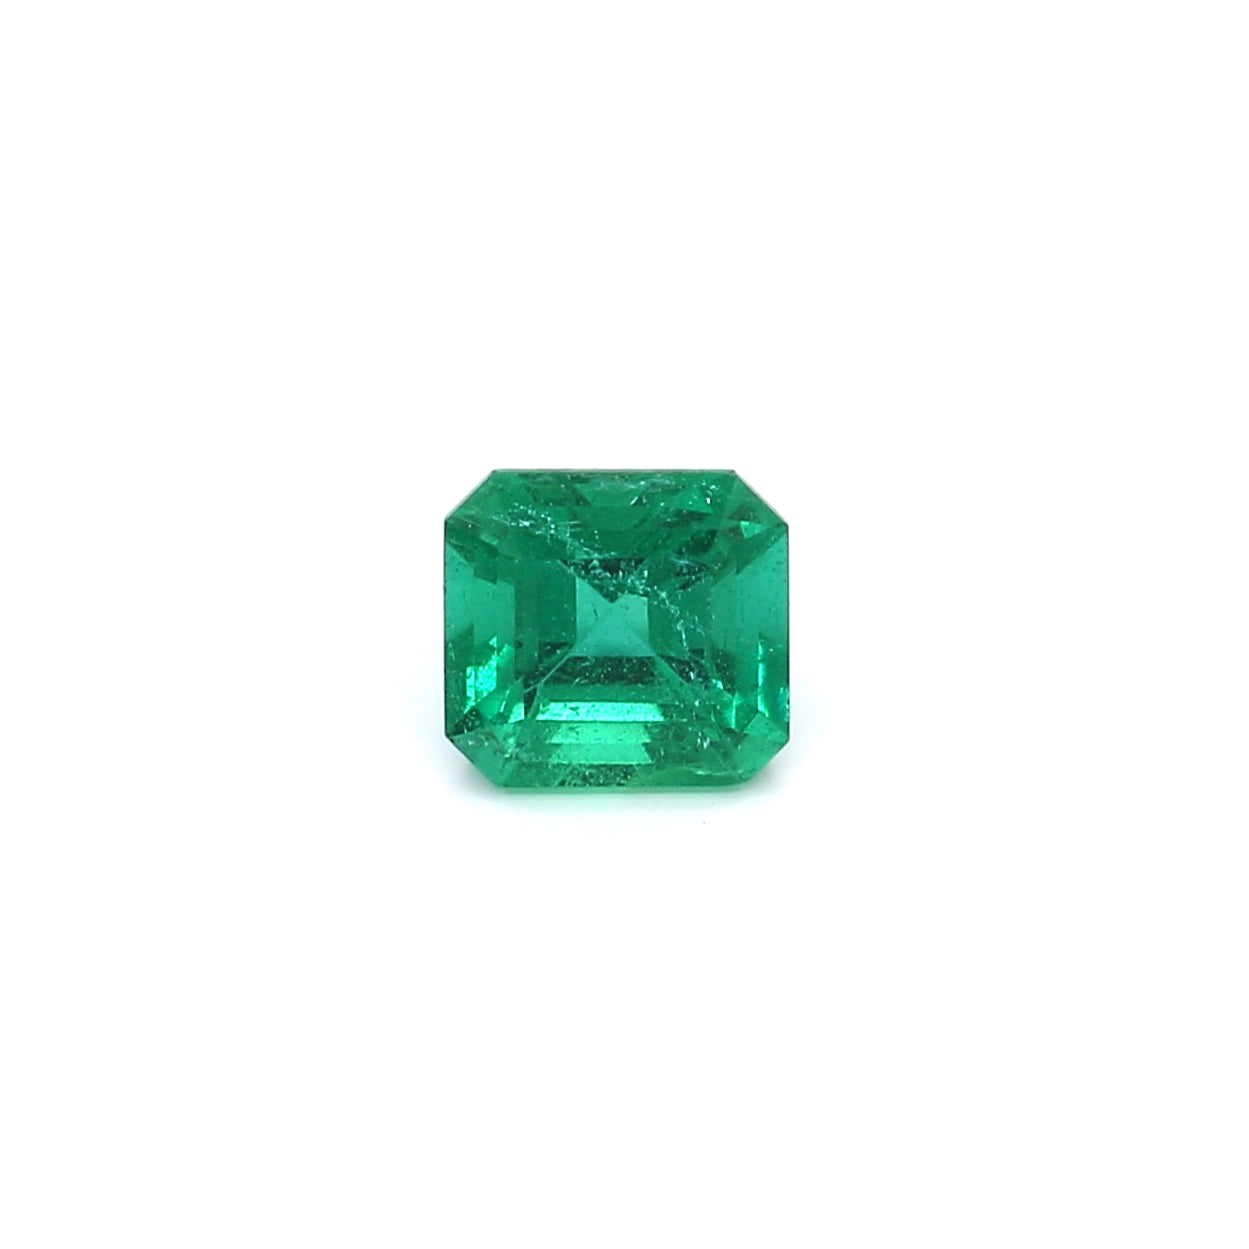 0.95ct Octagon Emerald, Minor Oil, Zambia - 6.07 x 5.68 x 4.25mm